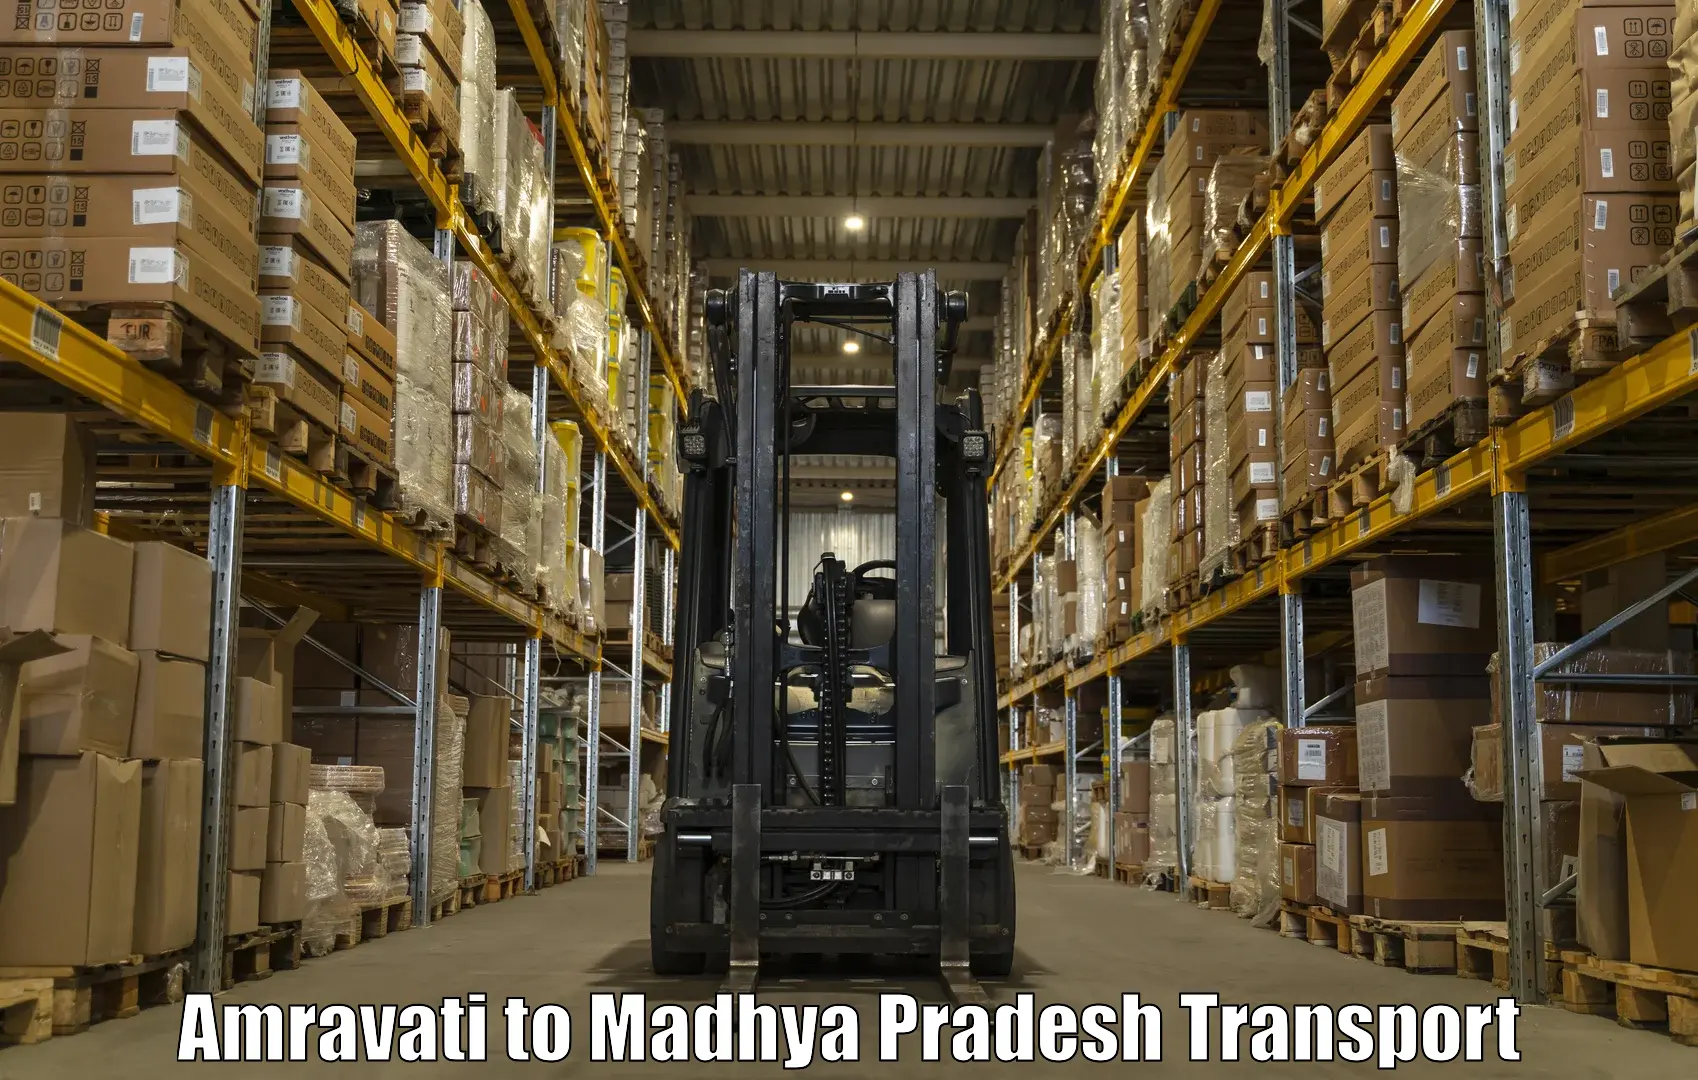 Pick up transport service Amravati to Bina